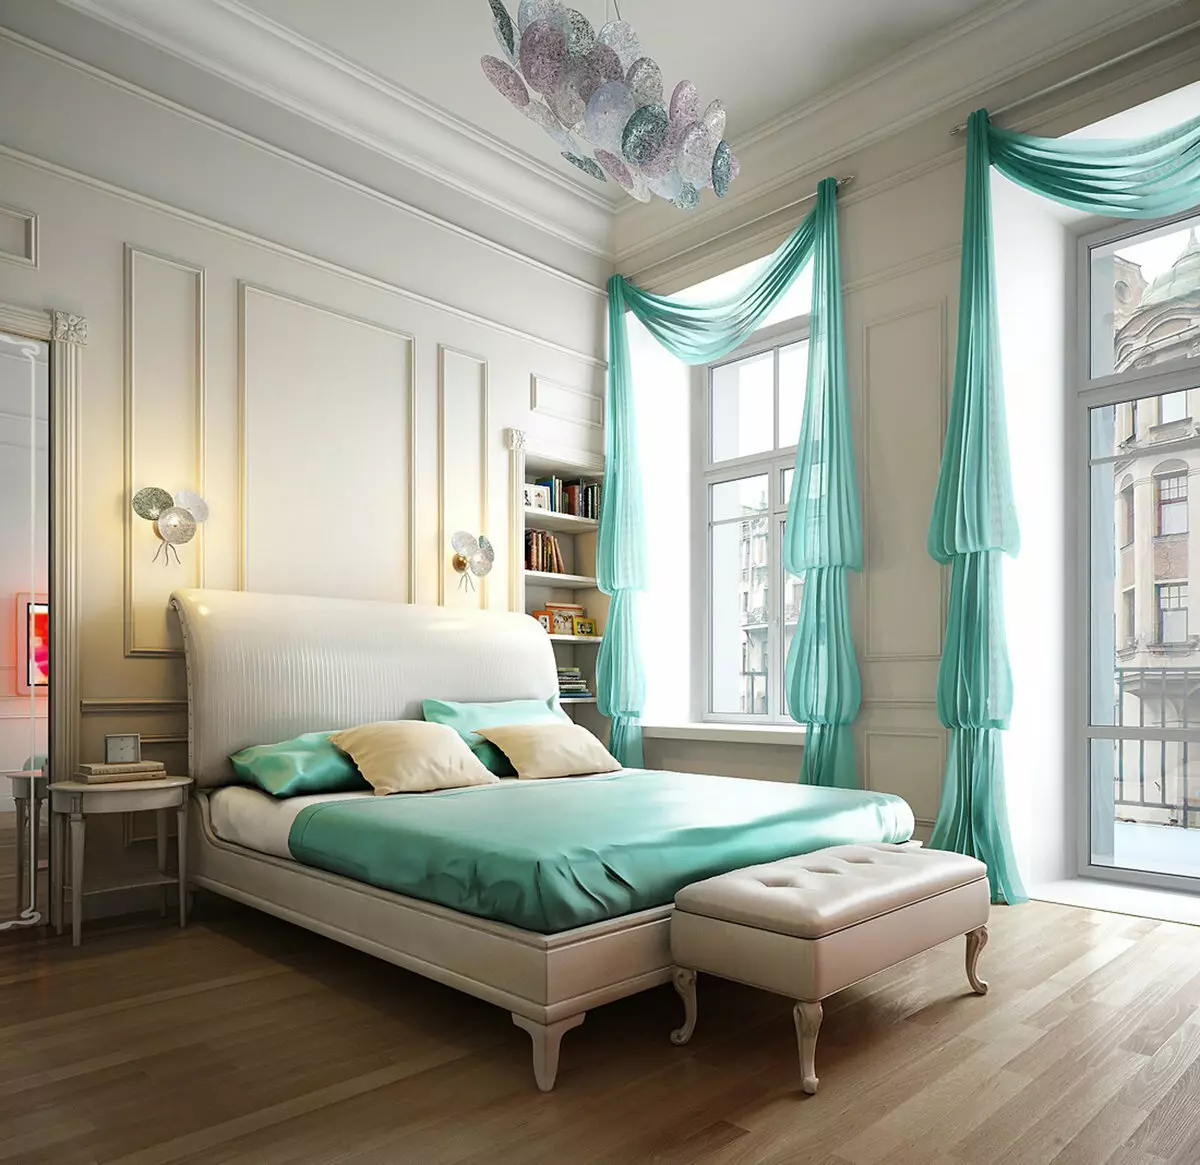 卧室设计14平方米。 M（87张）：内部和矩形的房间的布置，一间卧室客厅现代风格，家具布置的设计和空间分区 9875_62